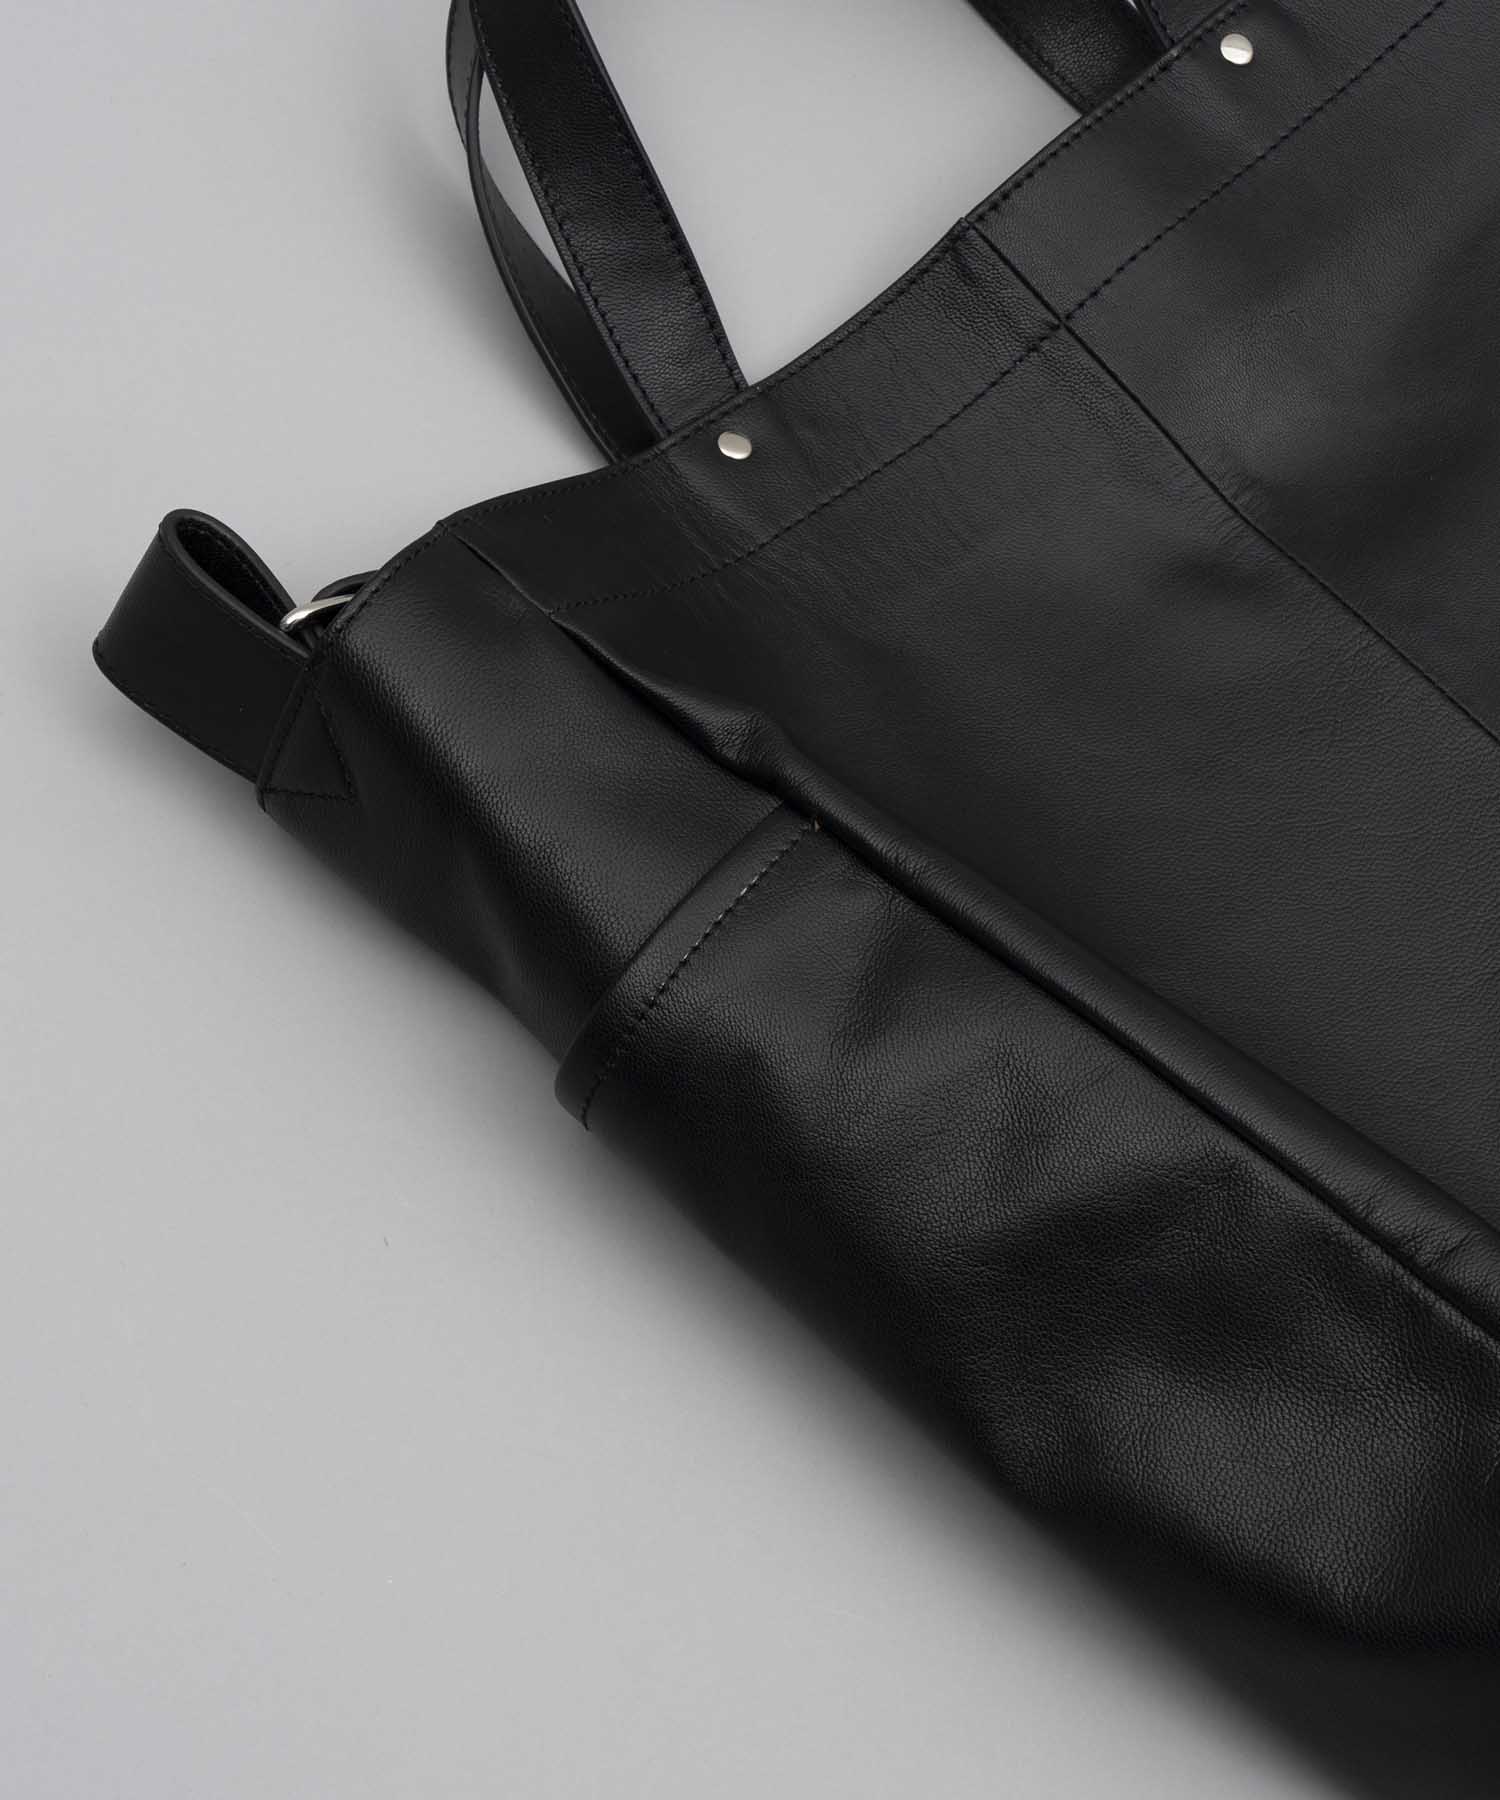 Goat Leather Shoulder Tool Bag